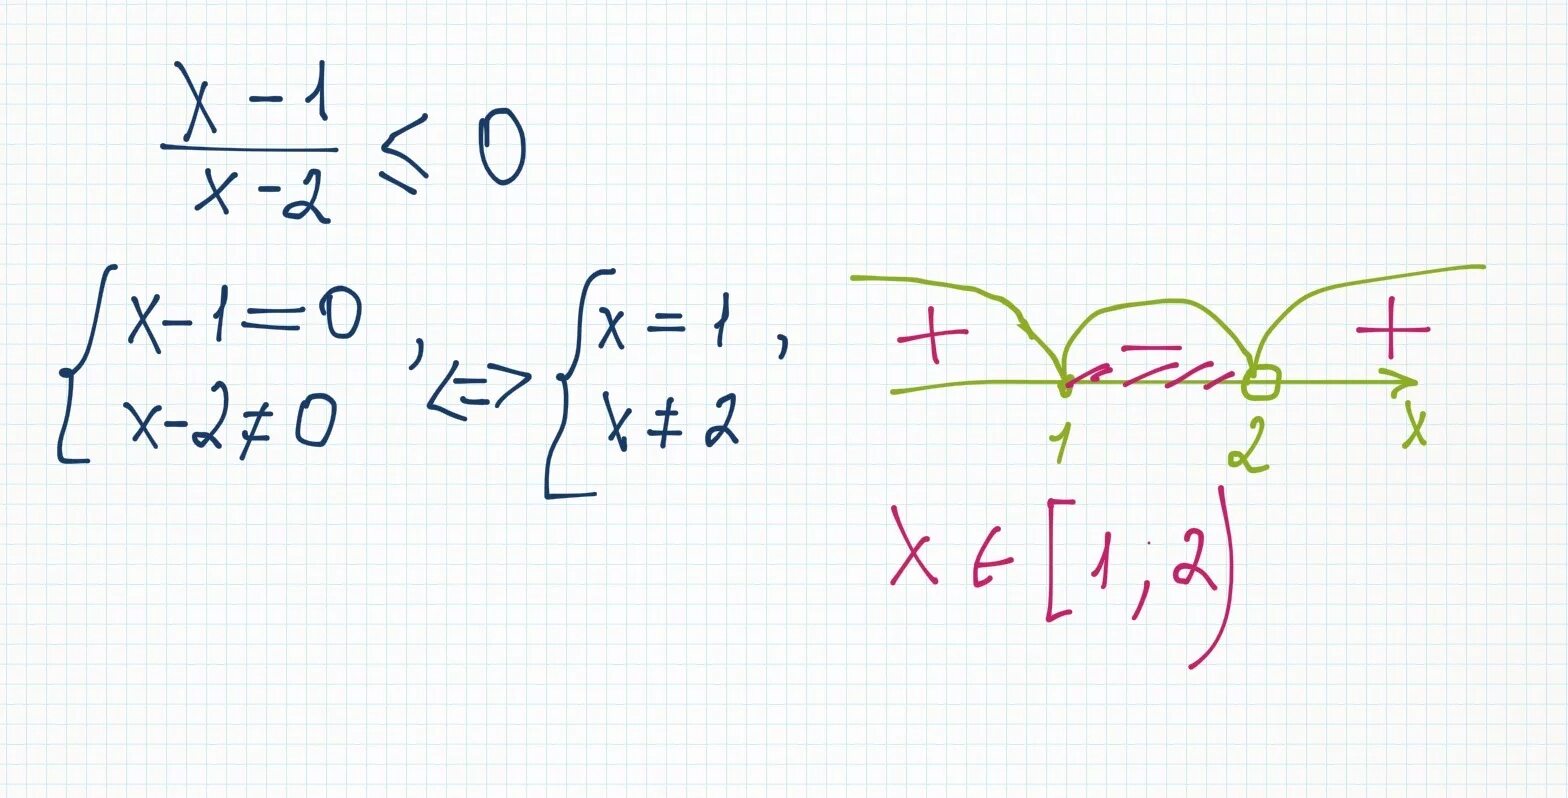 5x2 x 1 2x 3 x 1. X2-1 меньше или равно 0 x2-2 = 0. 1/X меньше 2. 2x-x2 меньше или равно 0. X 2 меньше или равно 0.